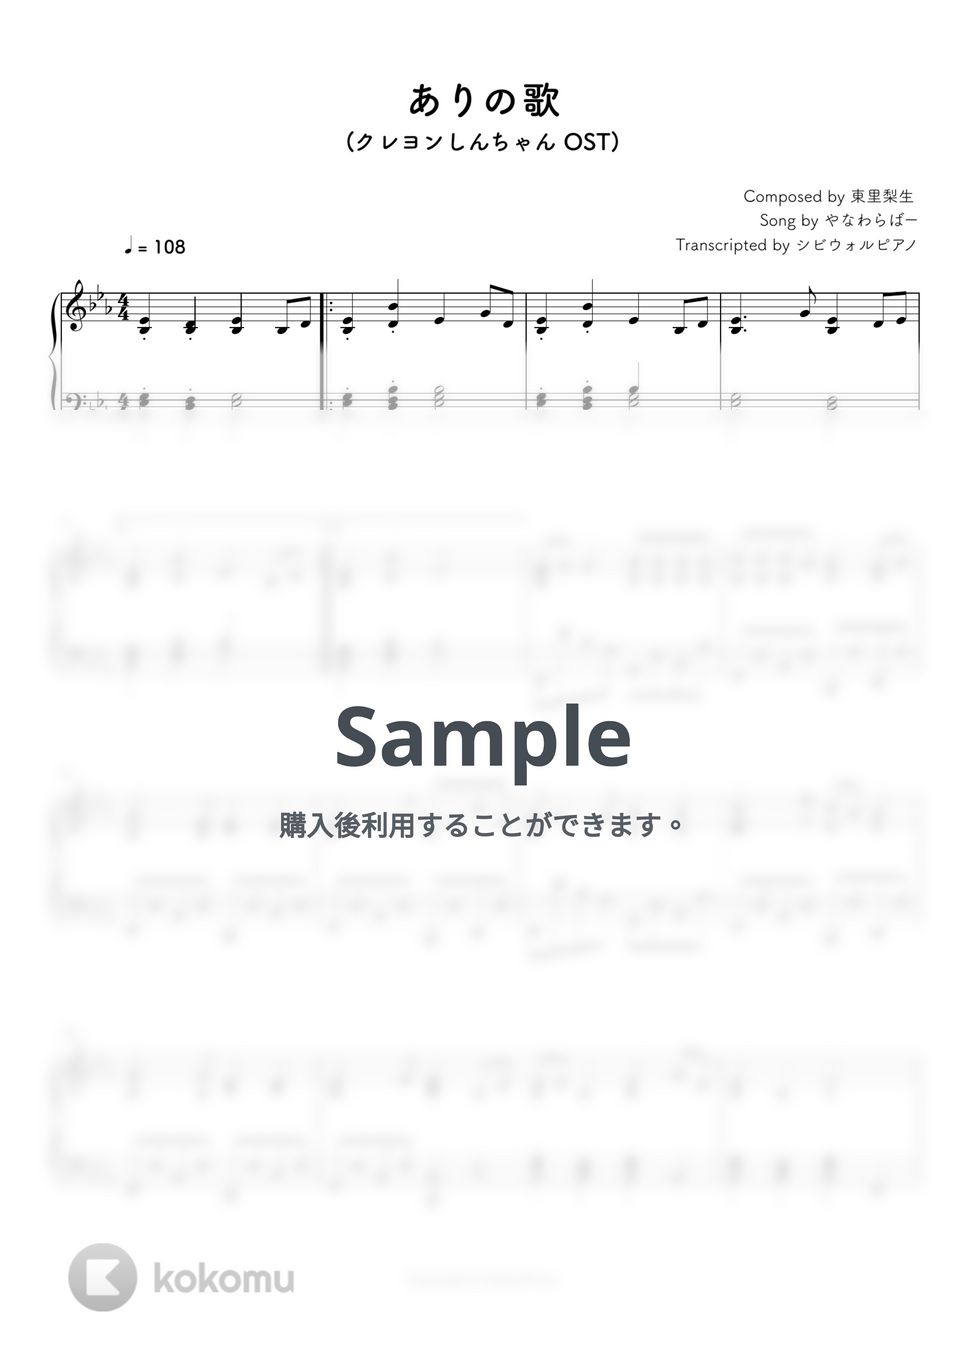 クレヨンしんちゃん - ありの歌 by シビウォルピアノ